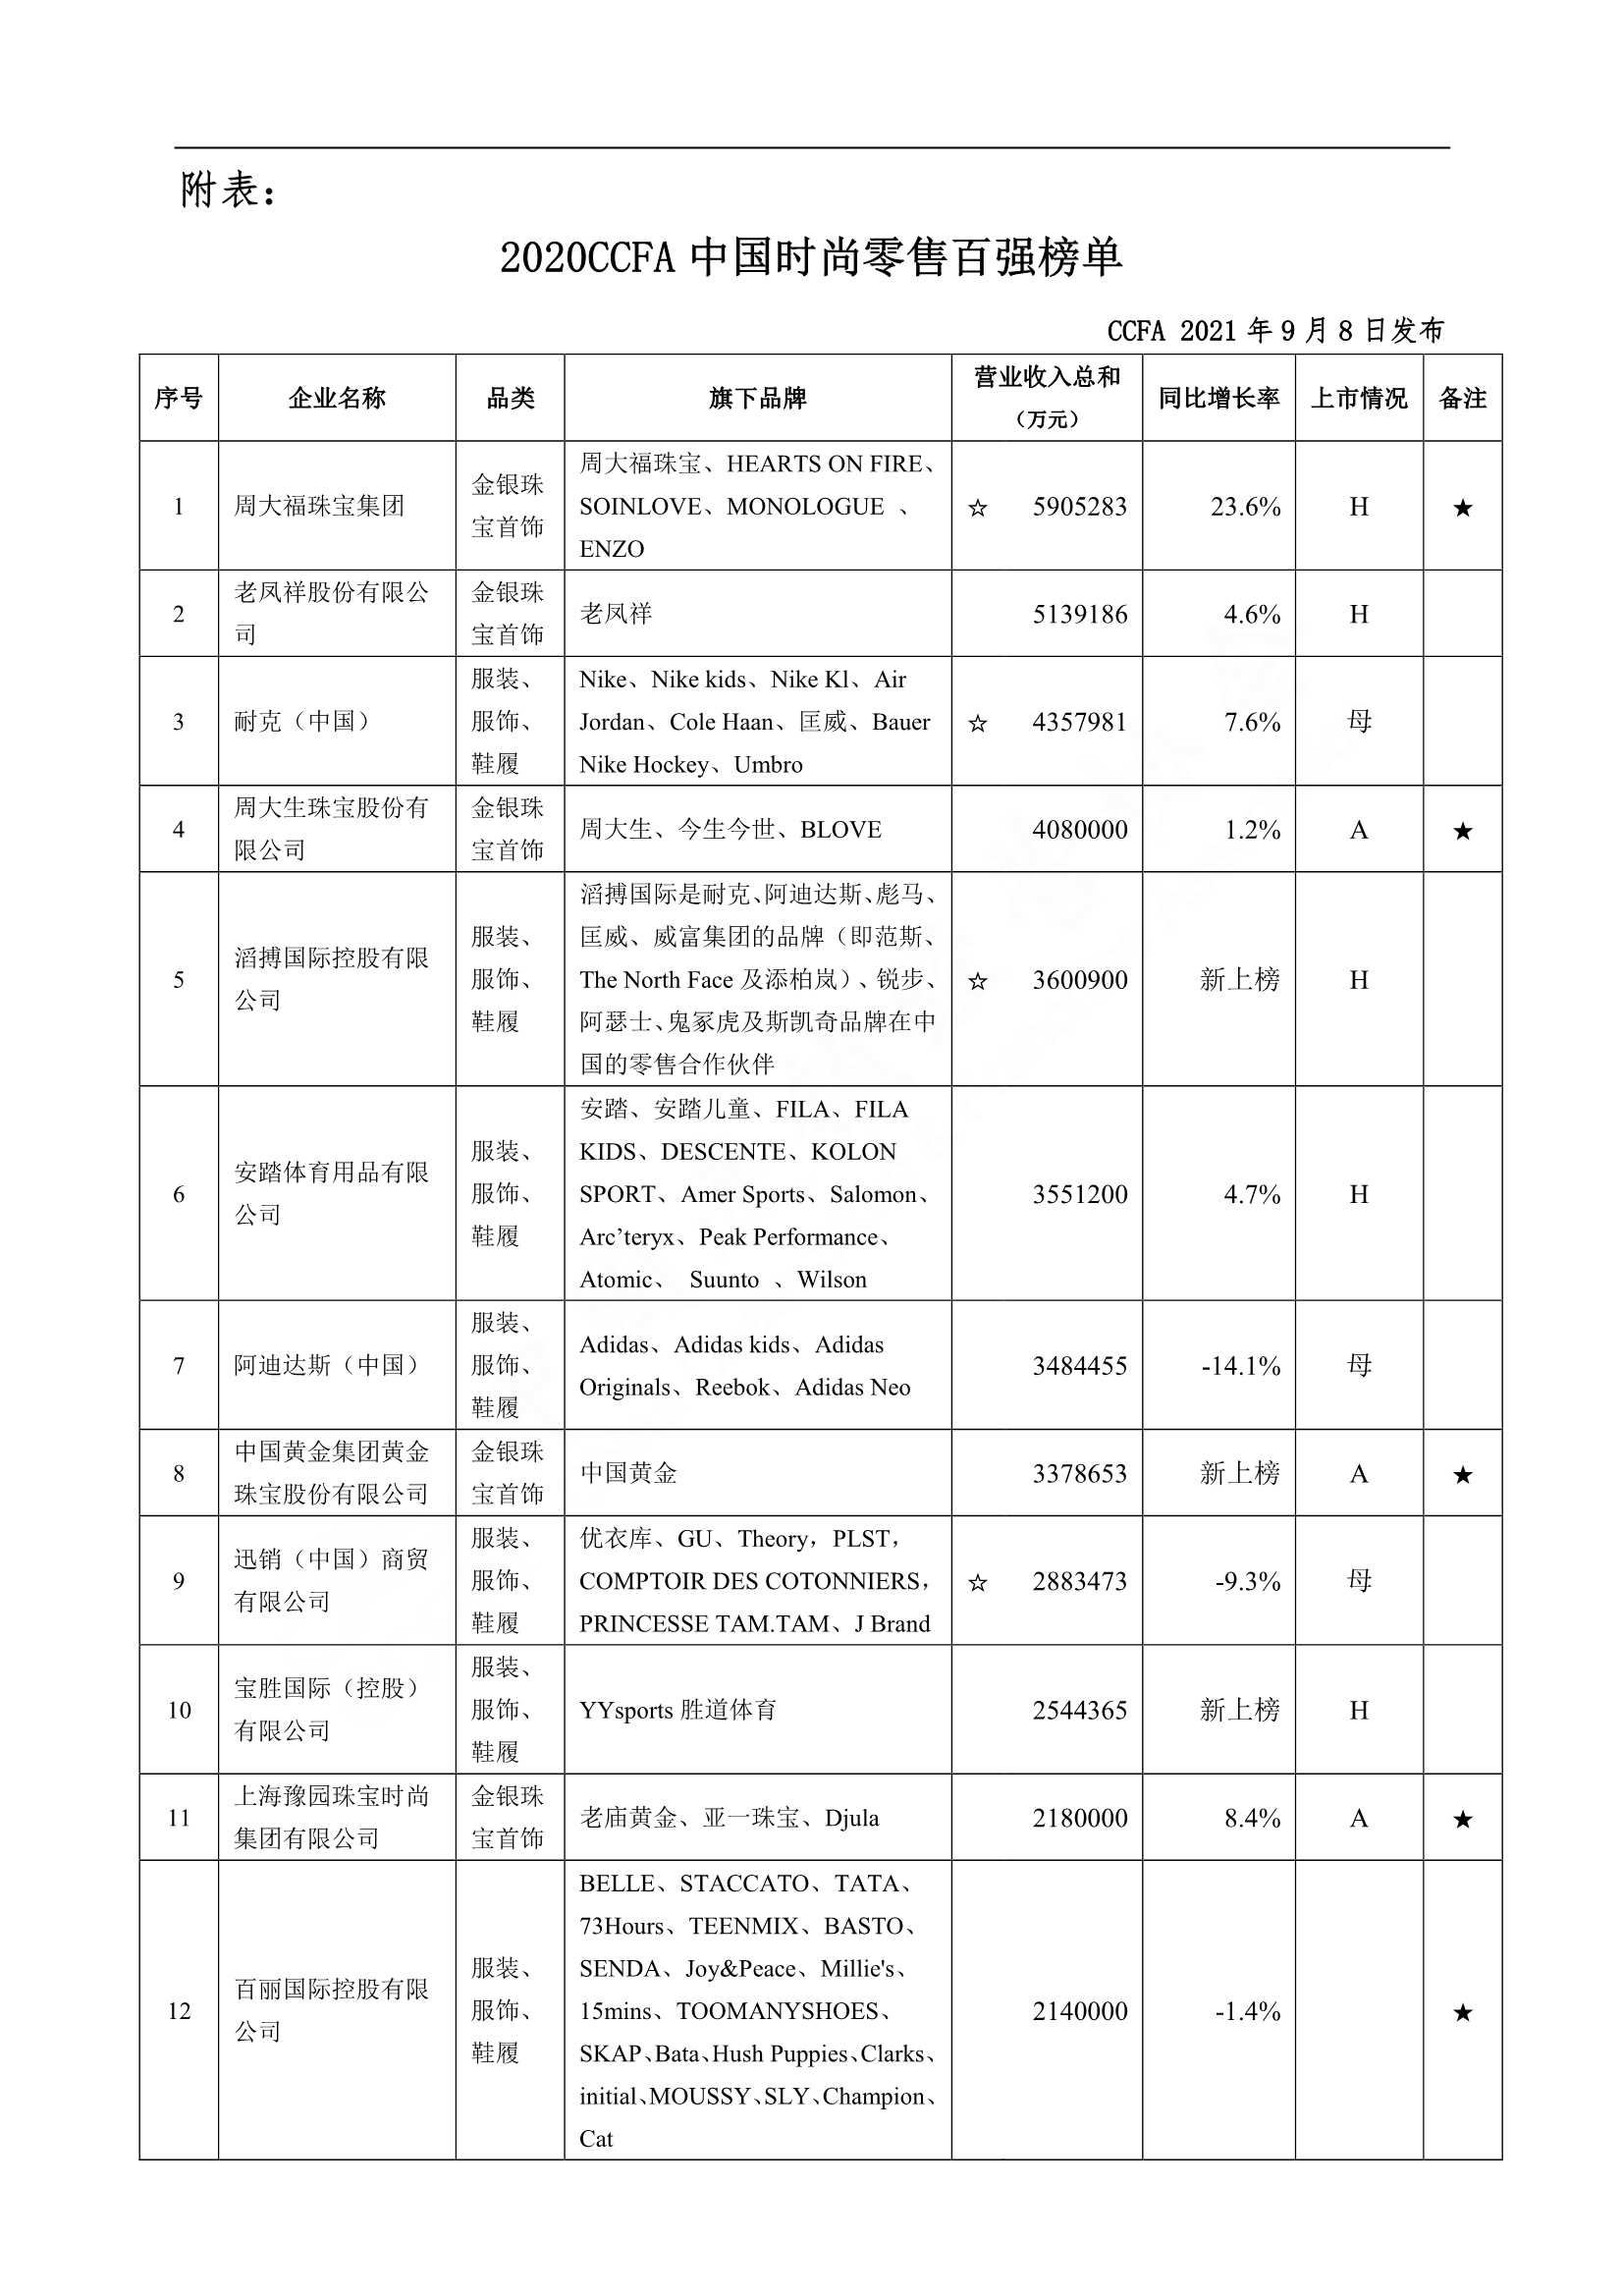 CCFA-2020CCFA中国时尚零售百强榜单-2021.09-8页